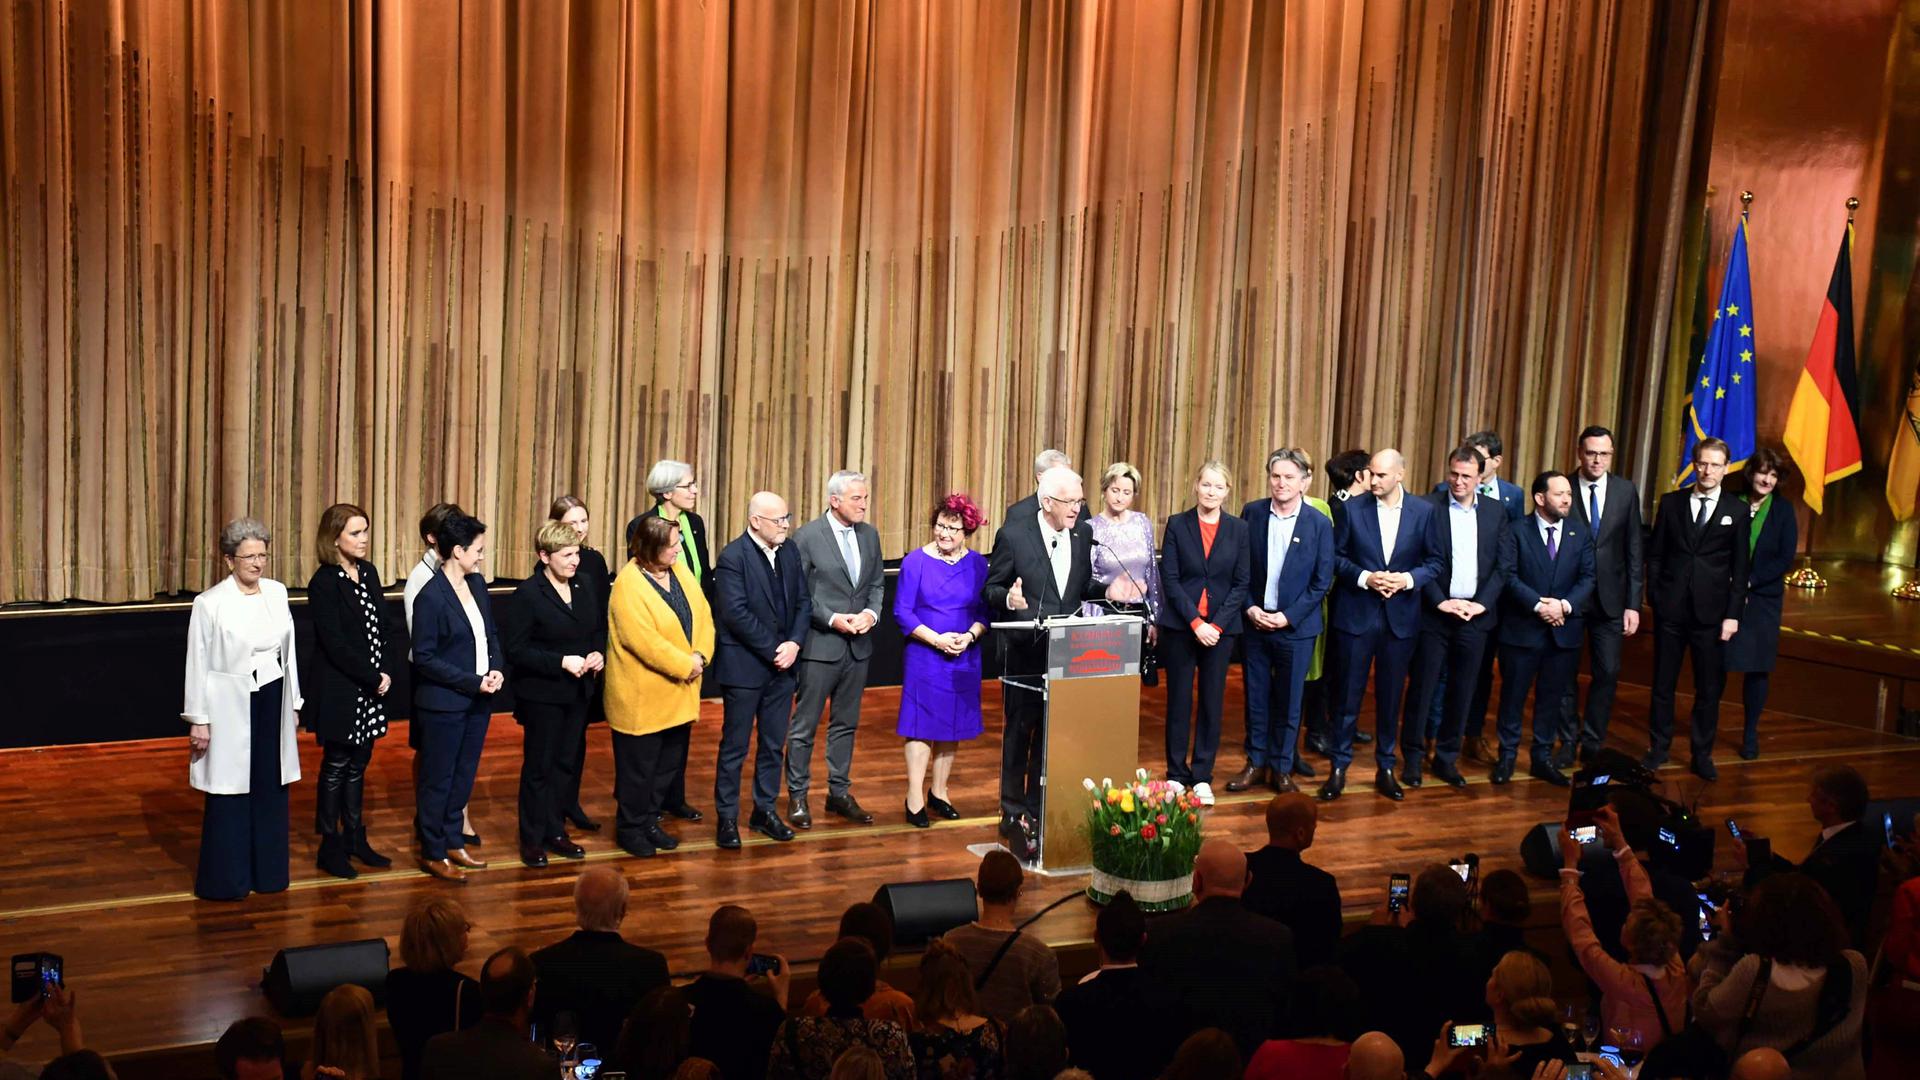 Stolze Kabinettsriege: Fast das komplette Landeskabinett mit Ministern und Staatssekretären war, angeführt von Ministerpräsident Kretschmann (Mitte) nach Baden-Baden gekommen.